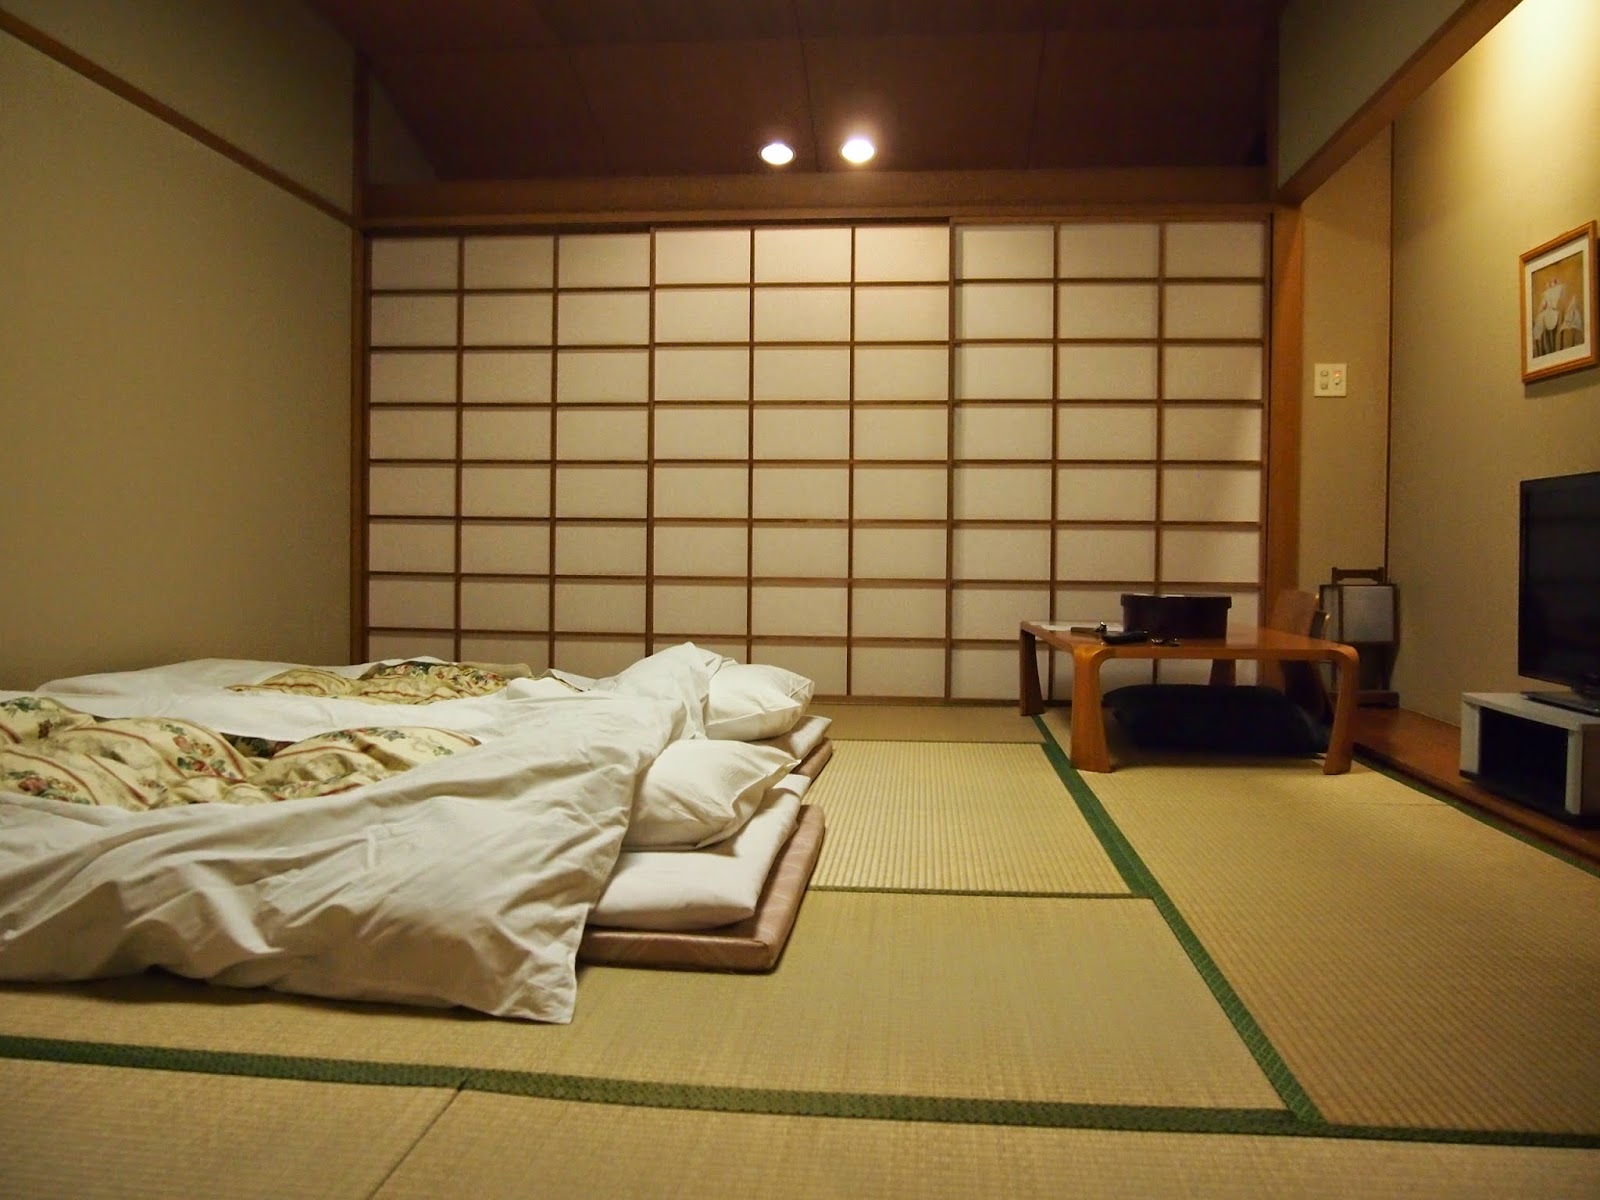 Fotografija interijera spavaće sobe u japanskom stilu